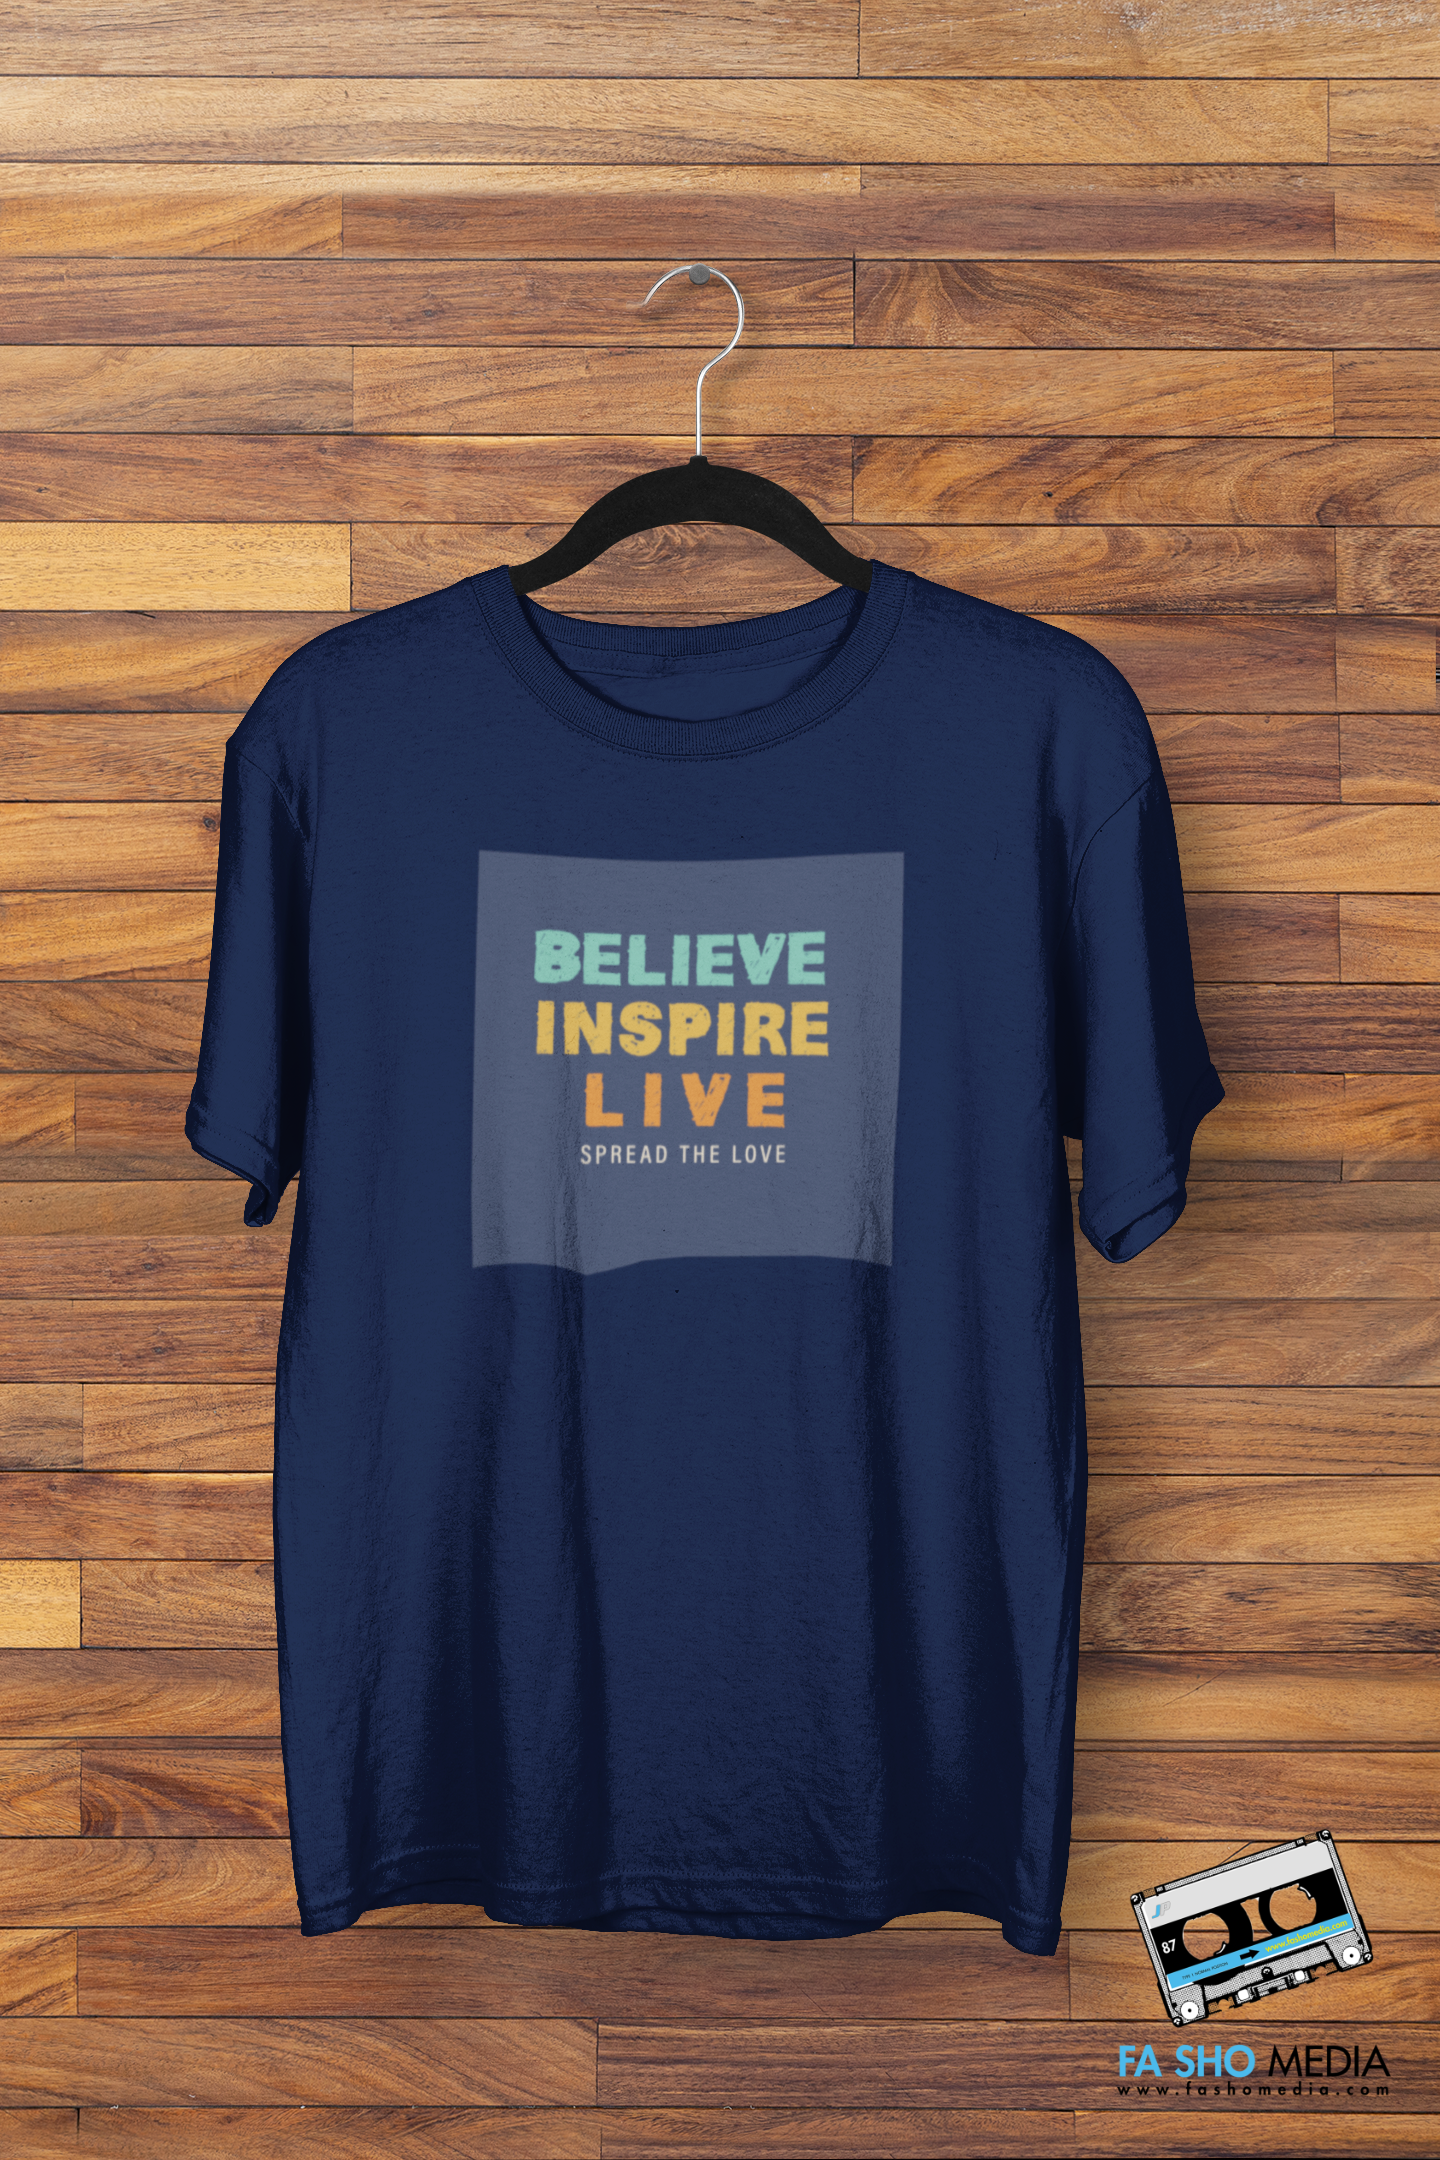 Believe Inspire Live Shirt (Men's)